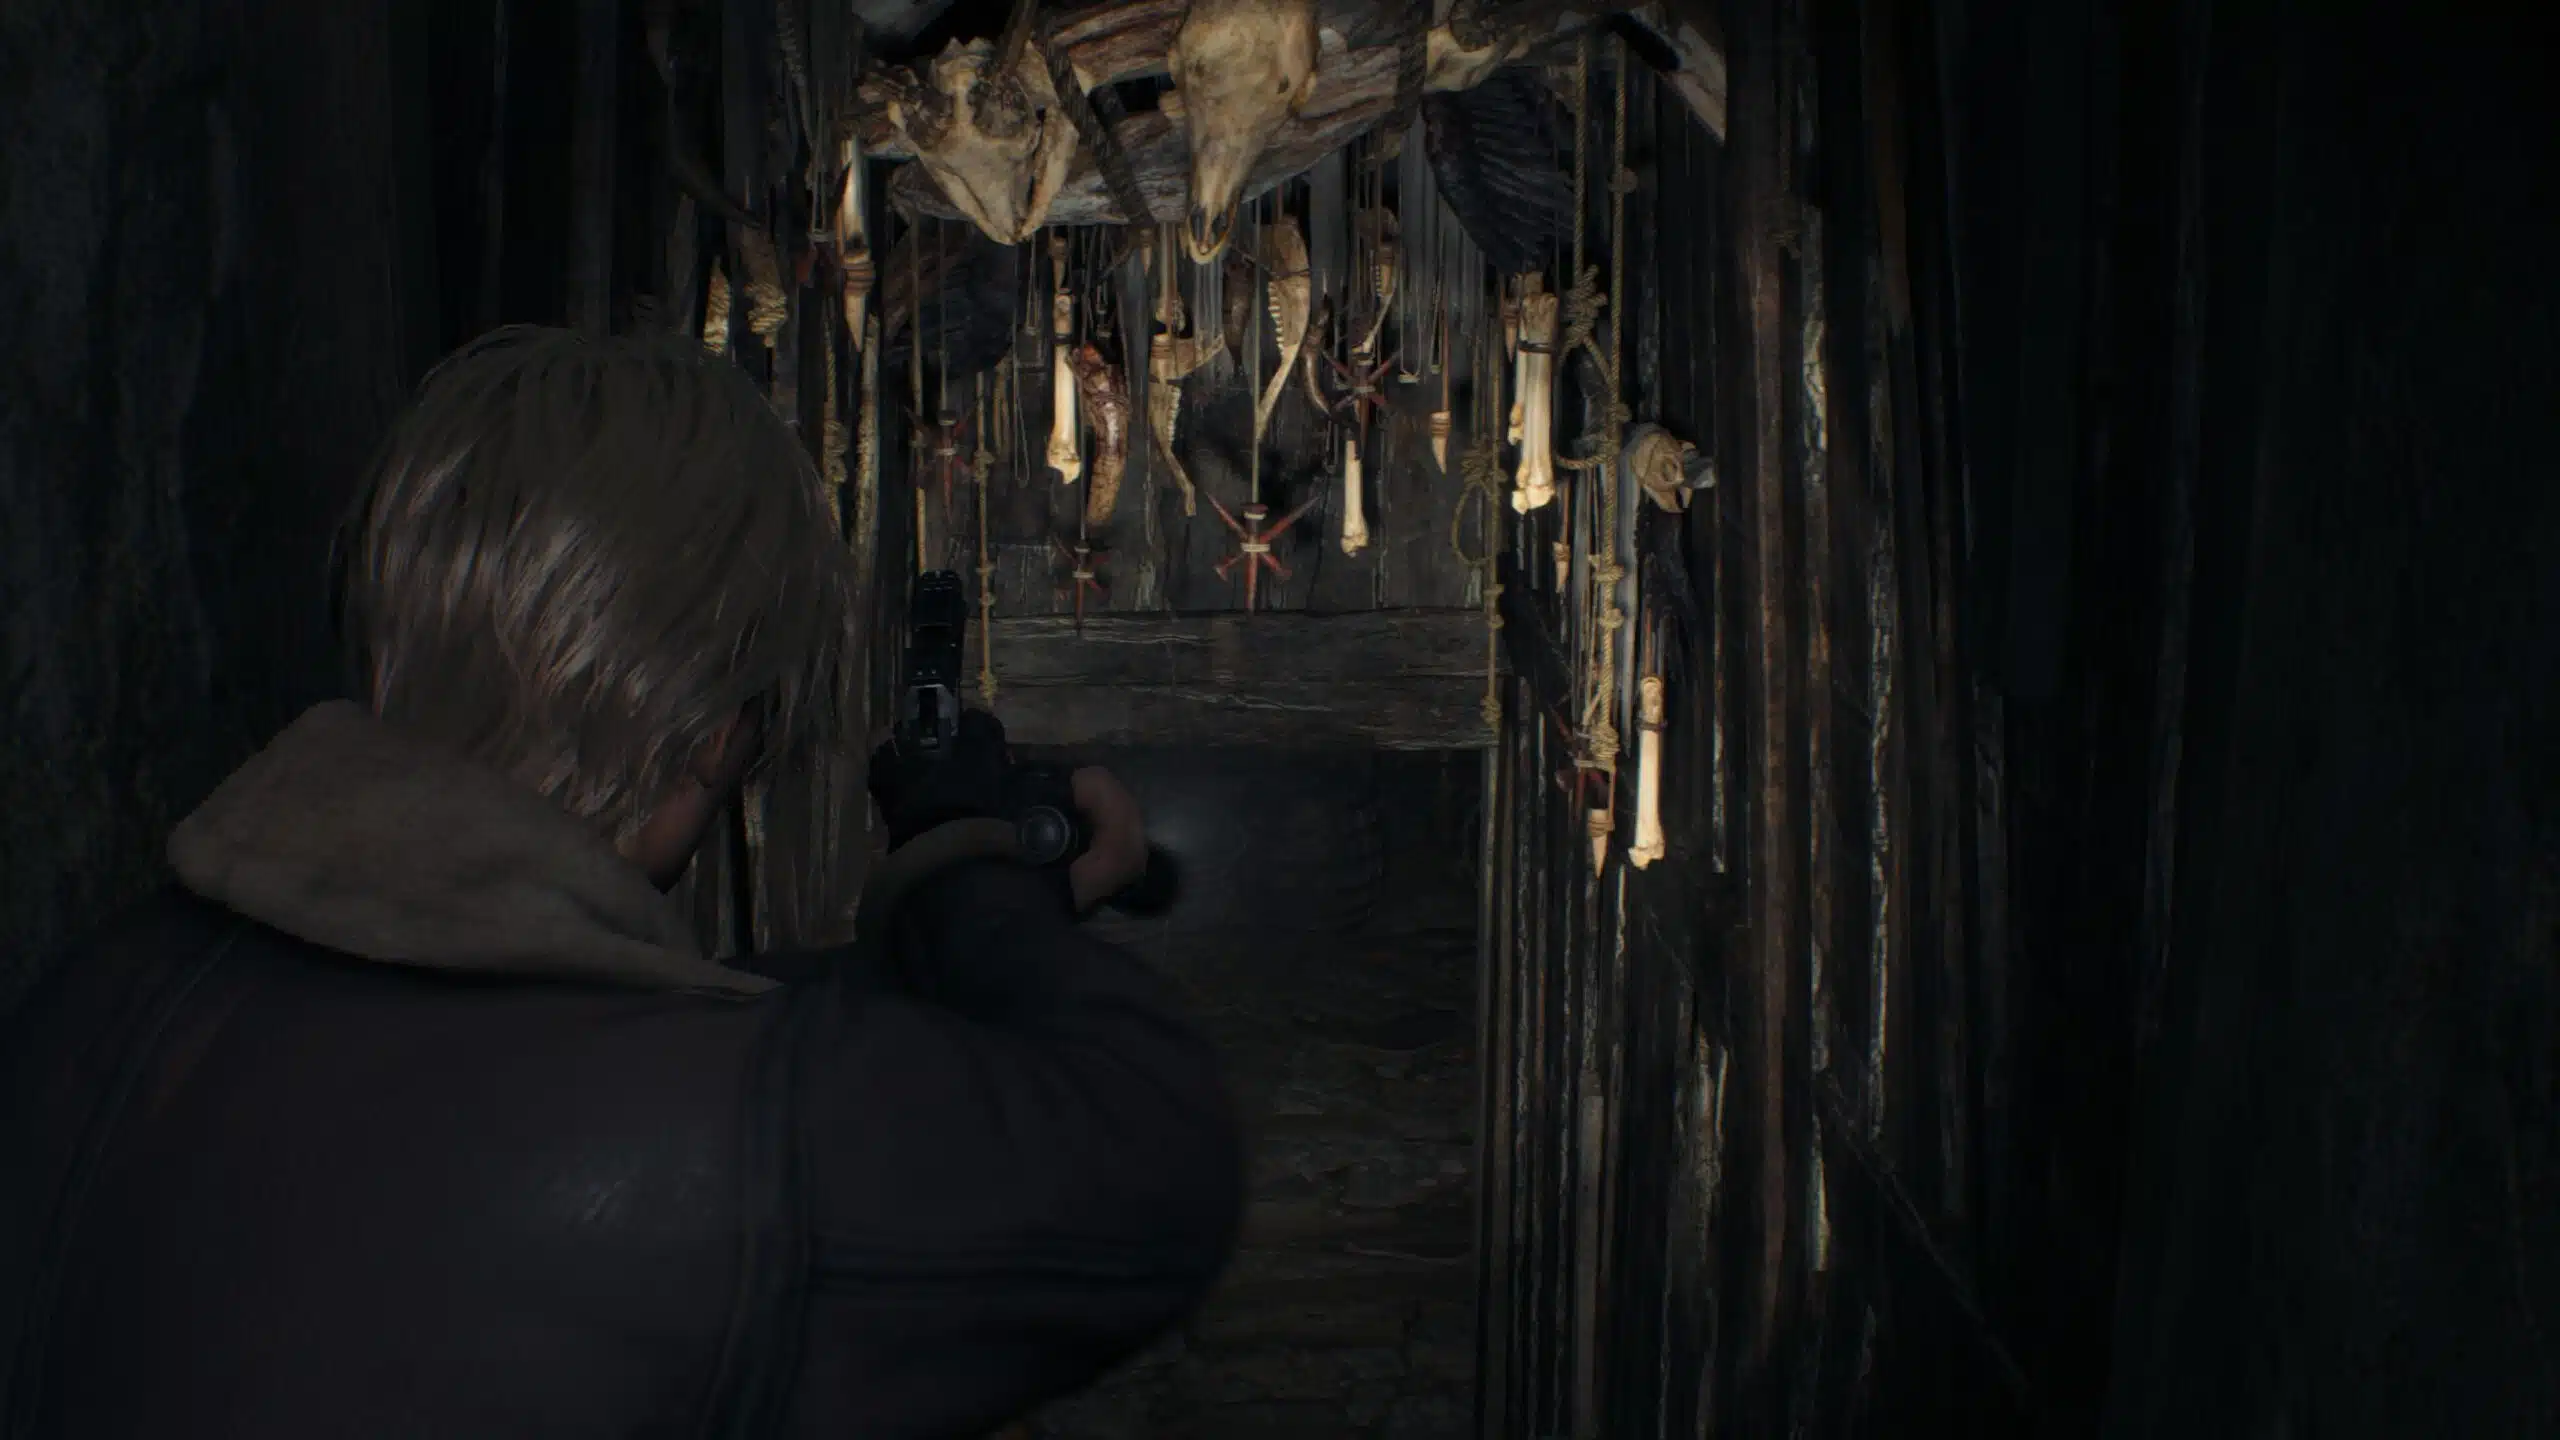 Demo de Resident Evil 4 foi disponibilizada nesta quinta (Foto: Reprodução/Thiago Barros)